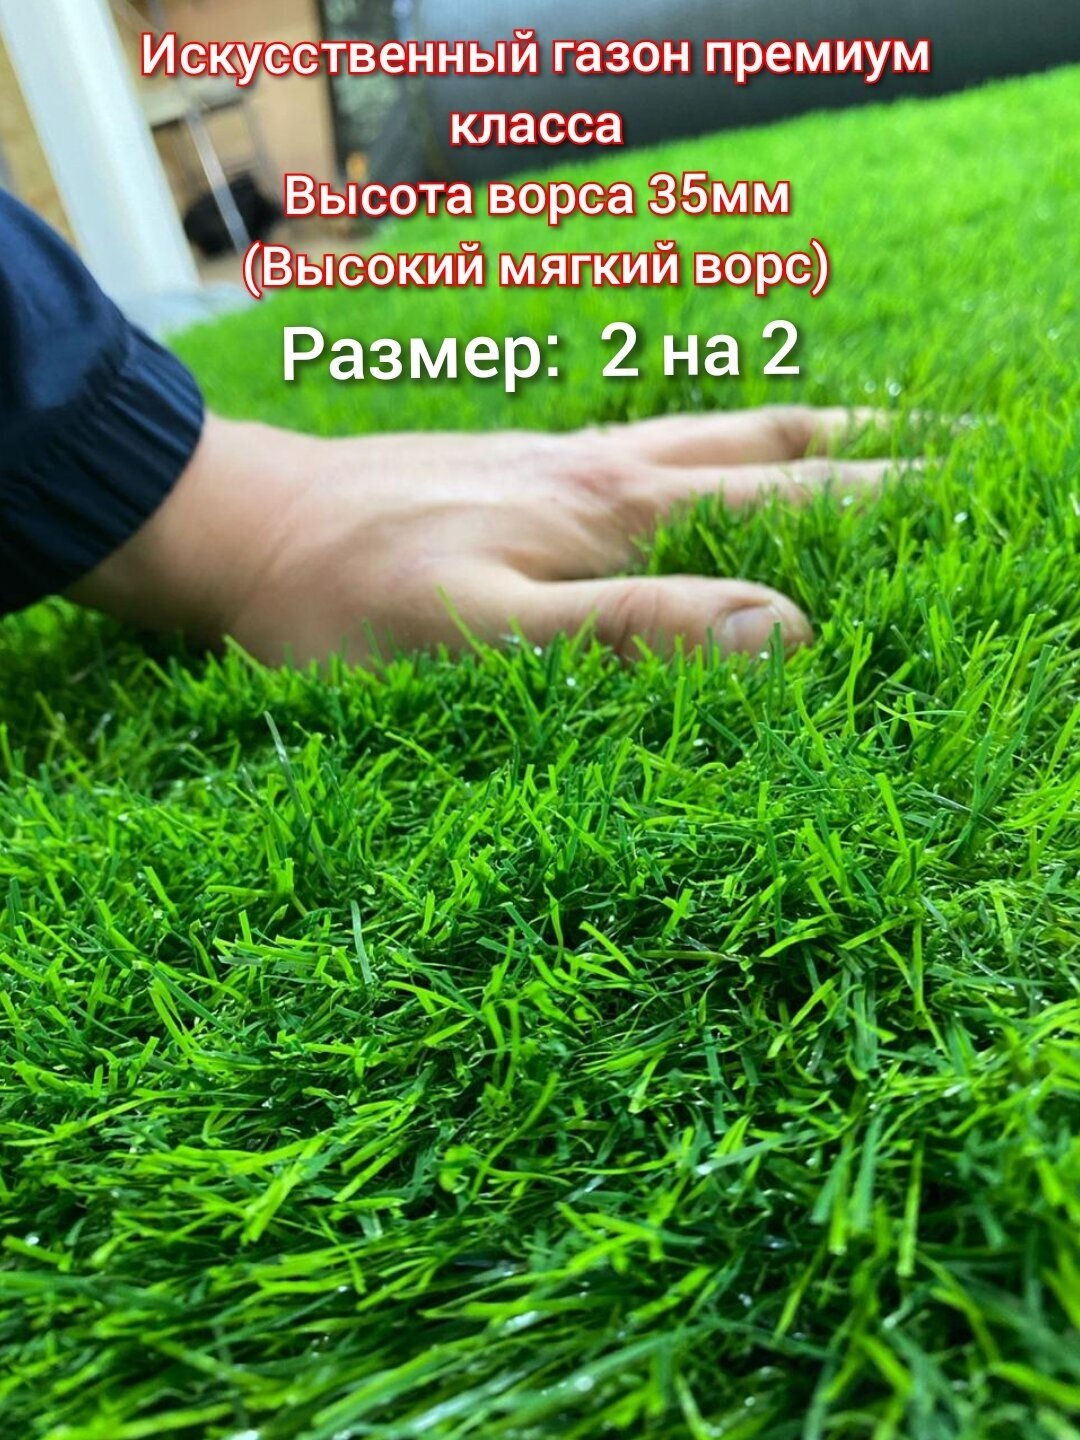 Газон искусственный 2 на 2 (высота ворса 35мм) искусственная трава с высоким мягким ворсом, имитация настоящего газона